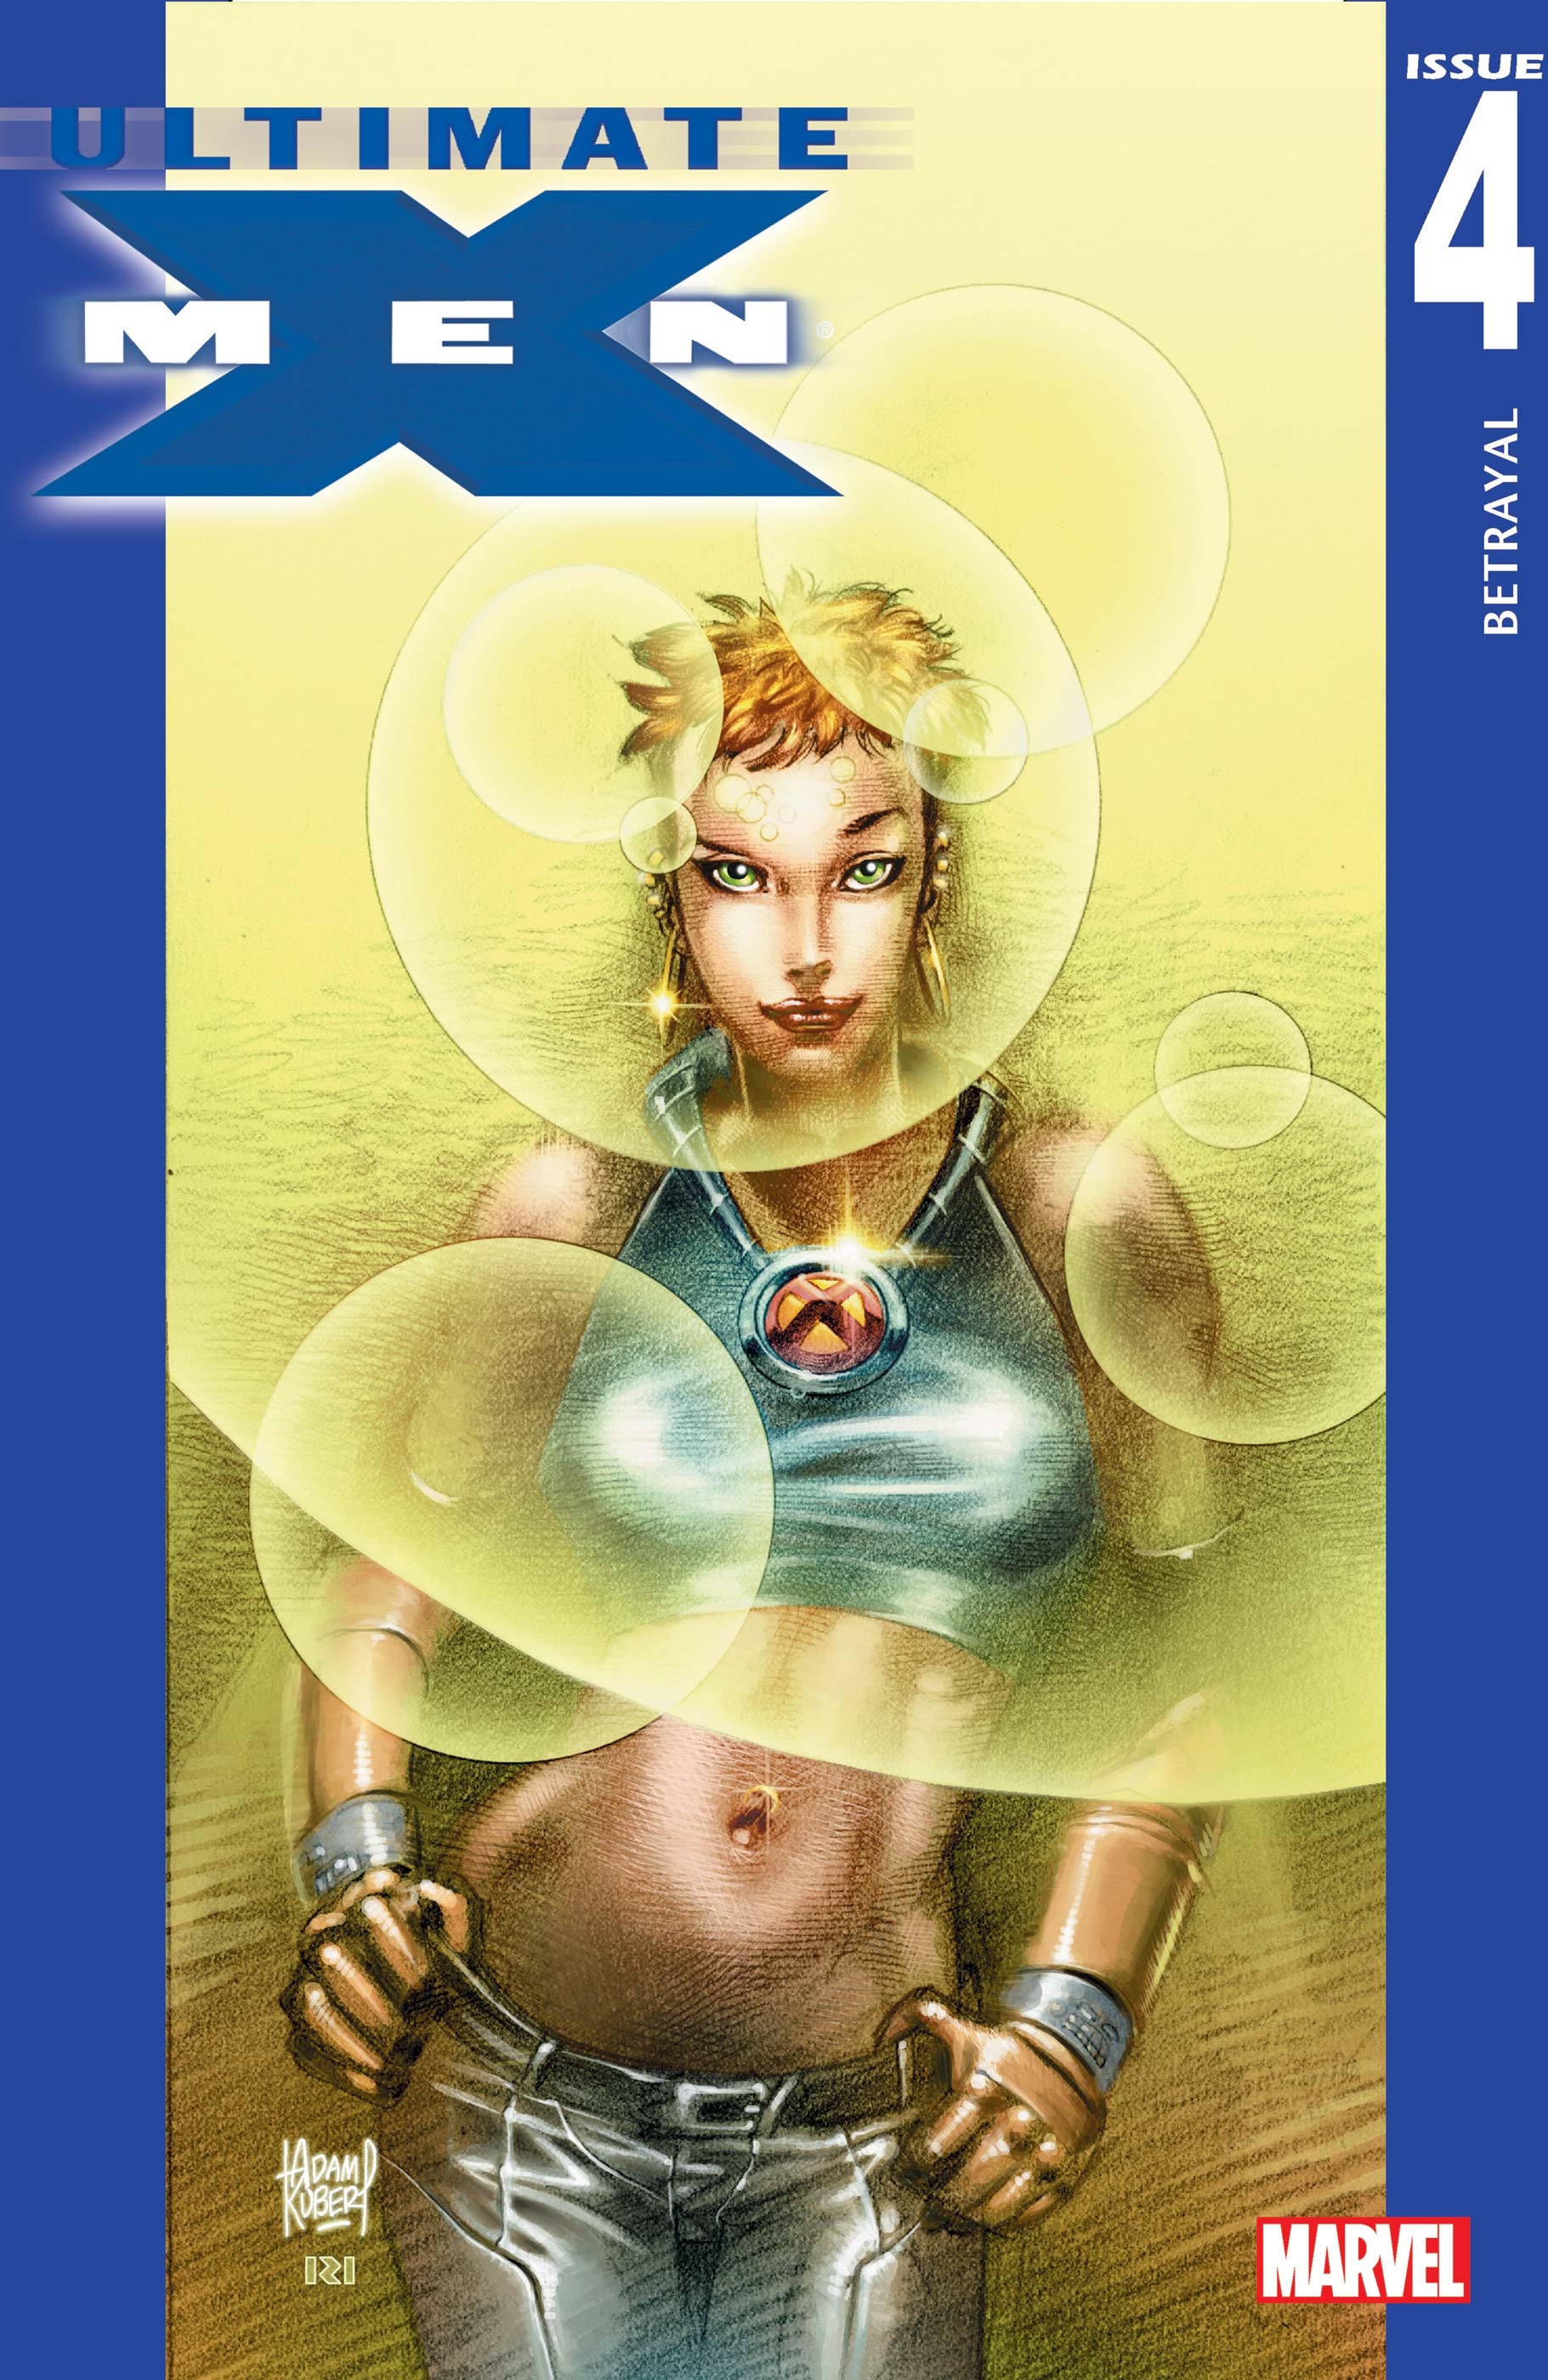 Ultimate X-Men (2001) #4